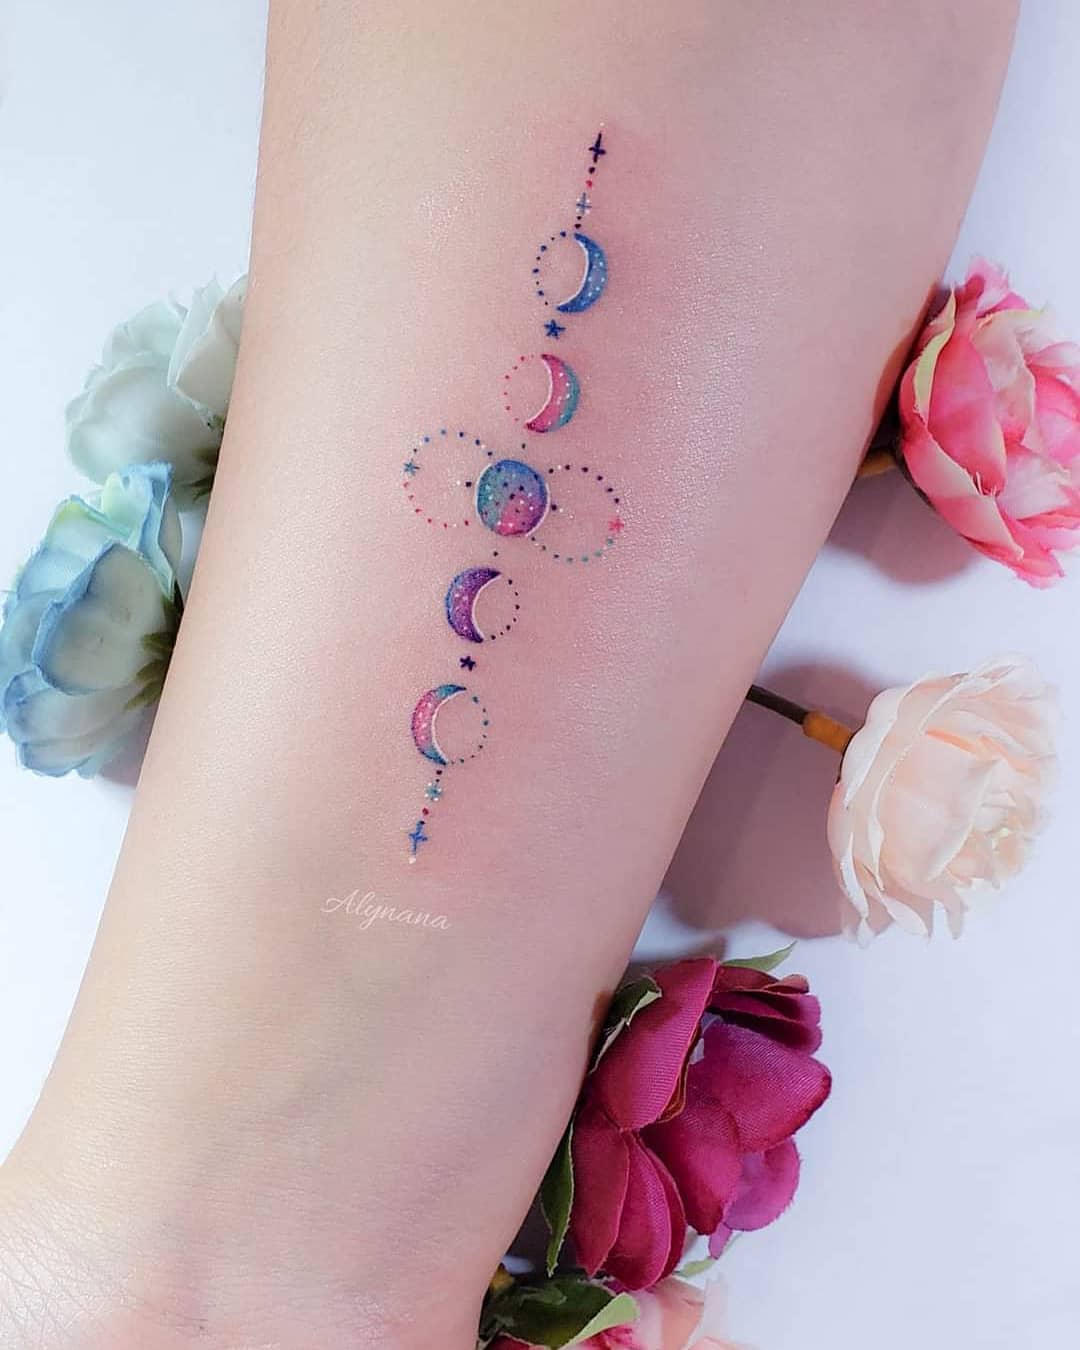 157 Tatuagens Coloridas Delicadas Artista Alynana Fases Lunares com pequenos pontos e estrelas no antebraço